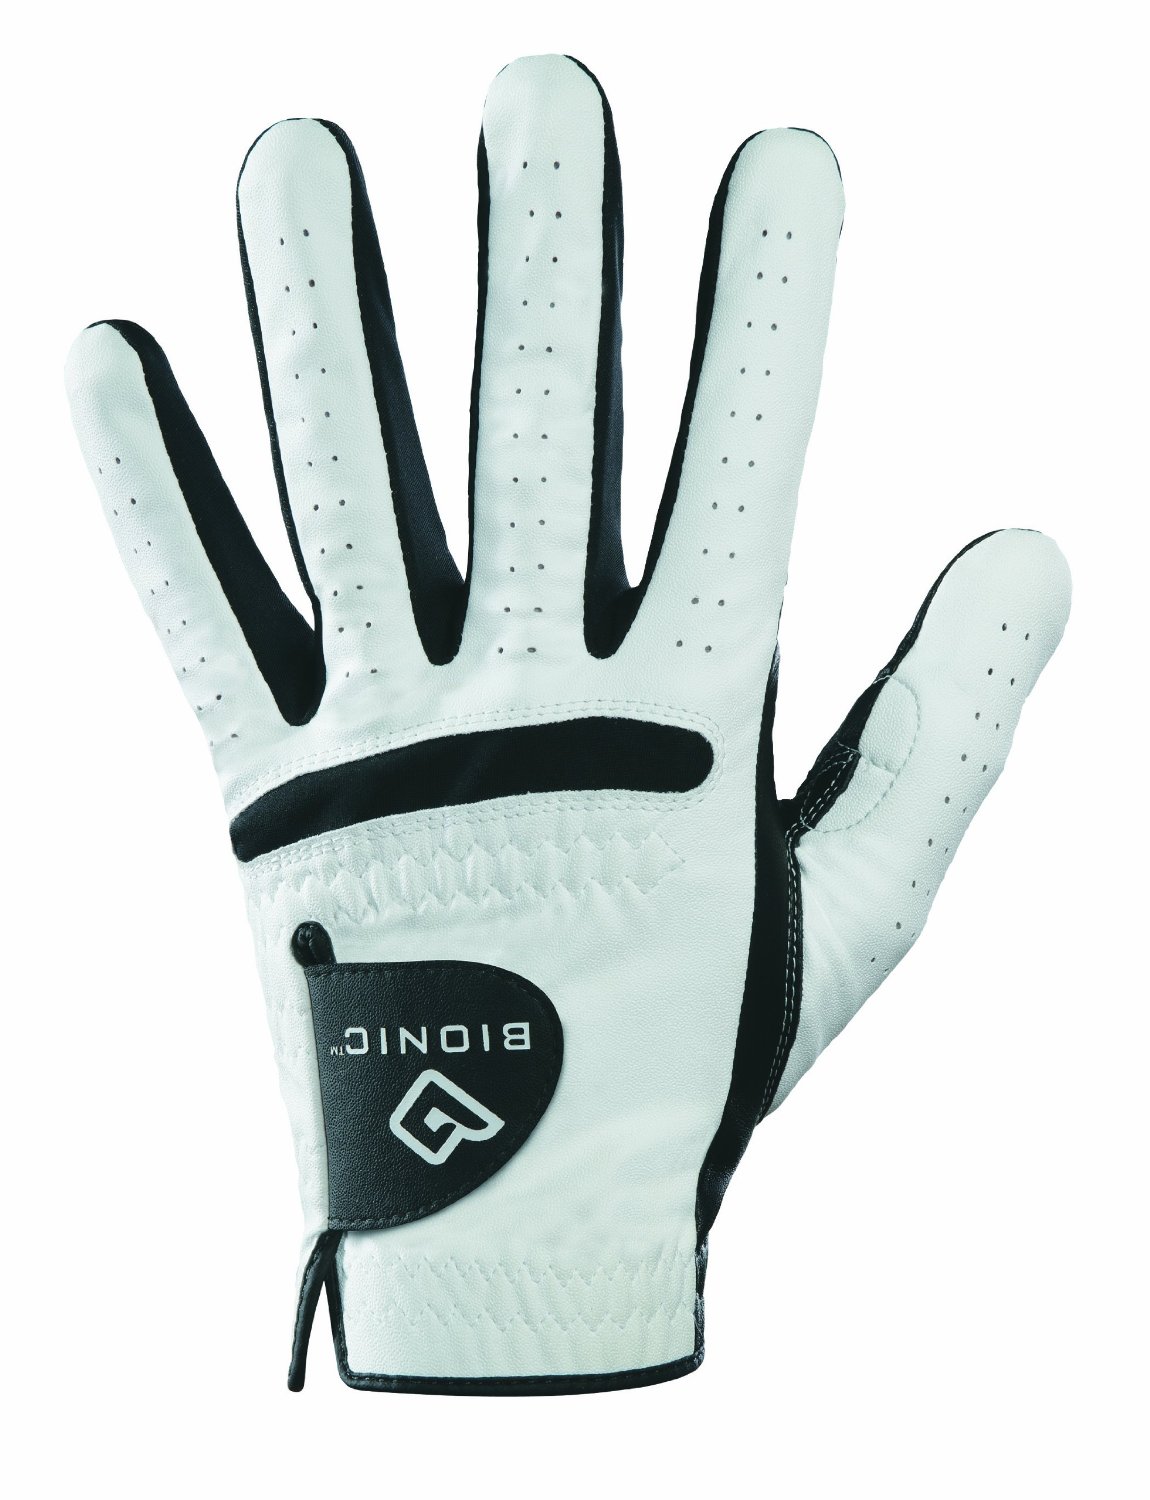 Mens Bionic RelaxGrip Golf Gloves